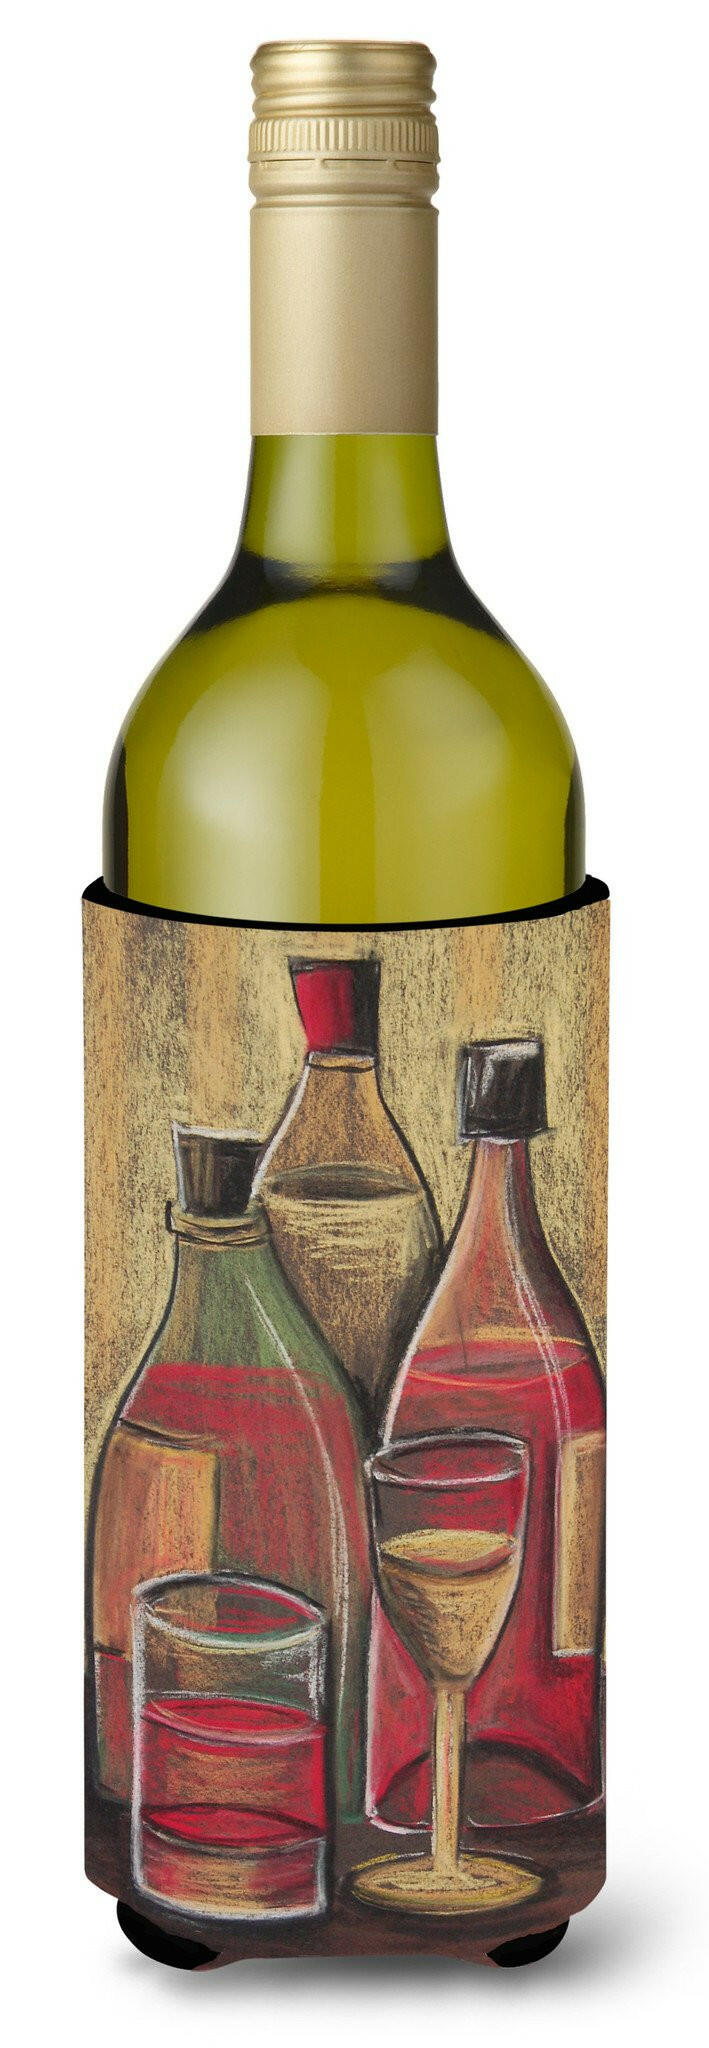 Bottles and Glasses Wine Wine Bottle Beverage Insulator Hugger BTBU0169LITERK by Caroline's Treasures